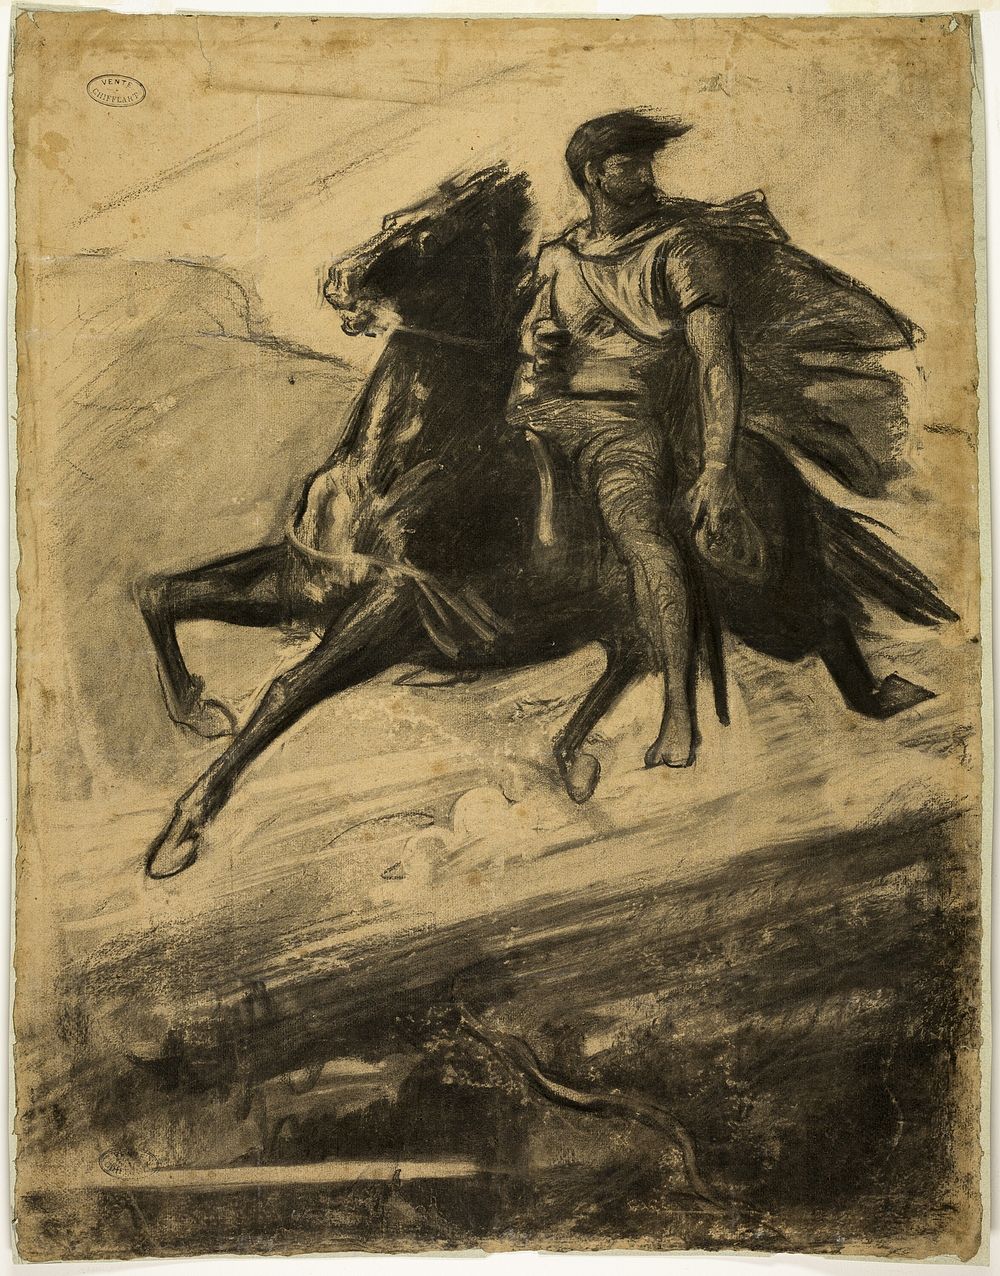 Man Riding a Horse through the Air by Nicolas-François Chifflart